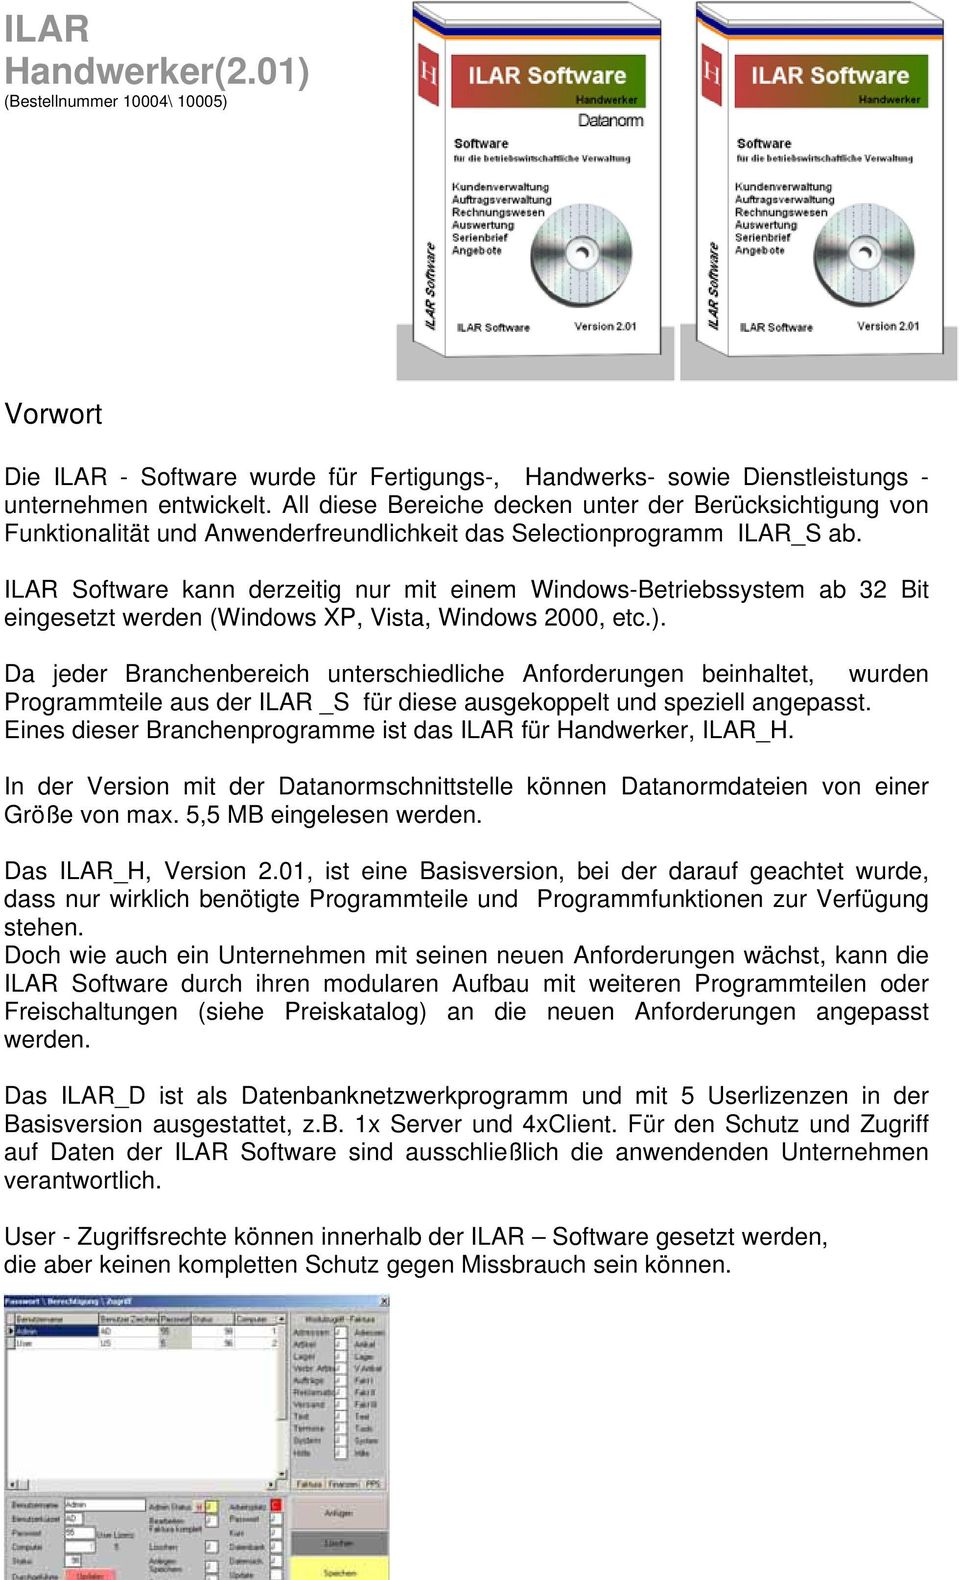 ILAR Software kann derzeitig nur mit einem Windows-Betriebssystem ab 32 Bit eingesetzt werden (Windows XP, Vista, Windows 2000, etc.).